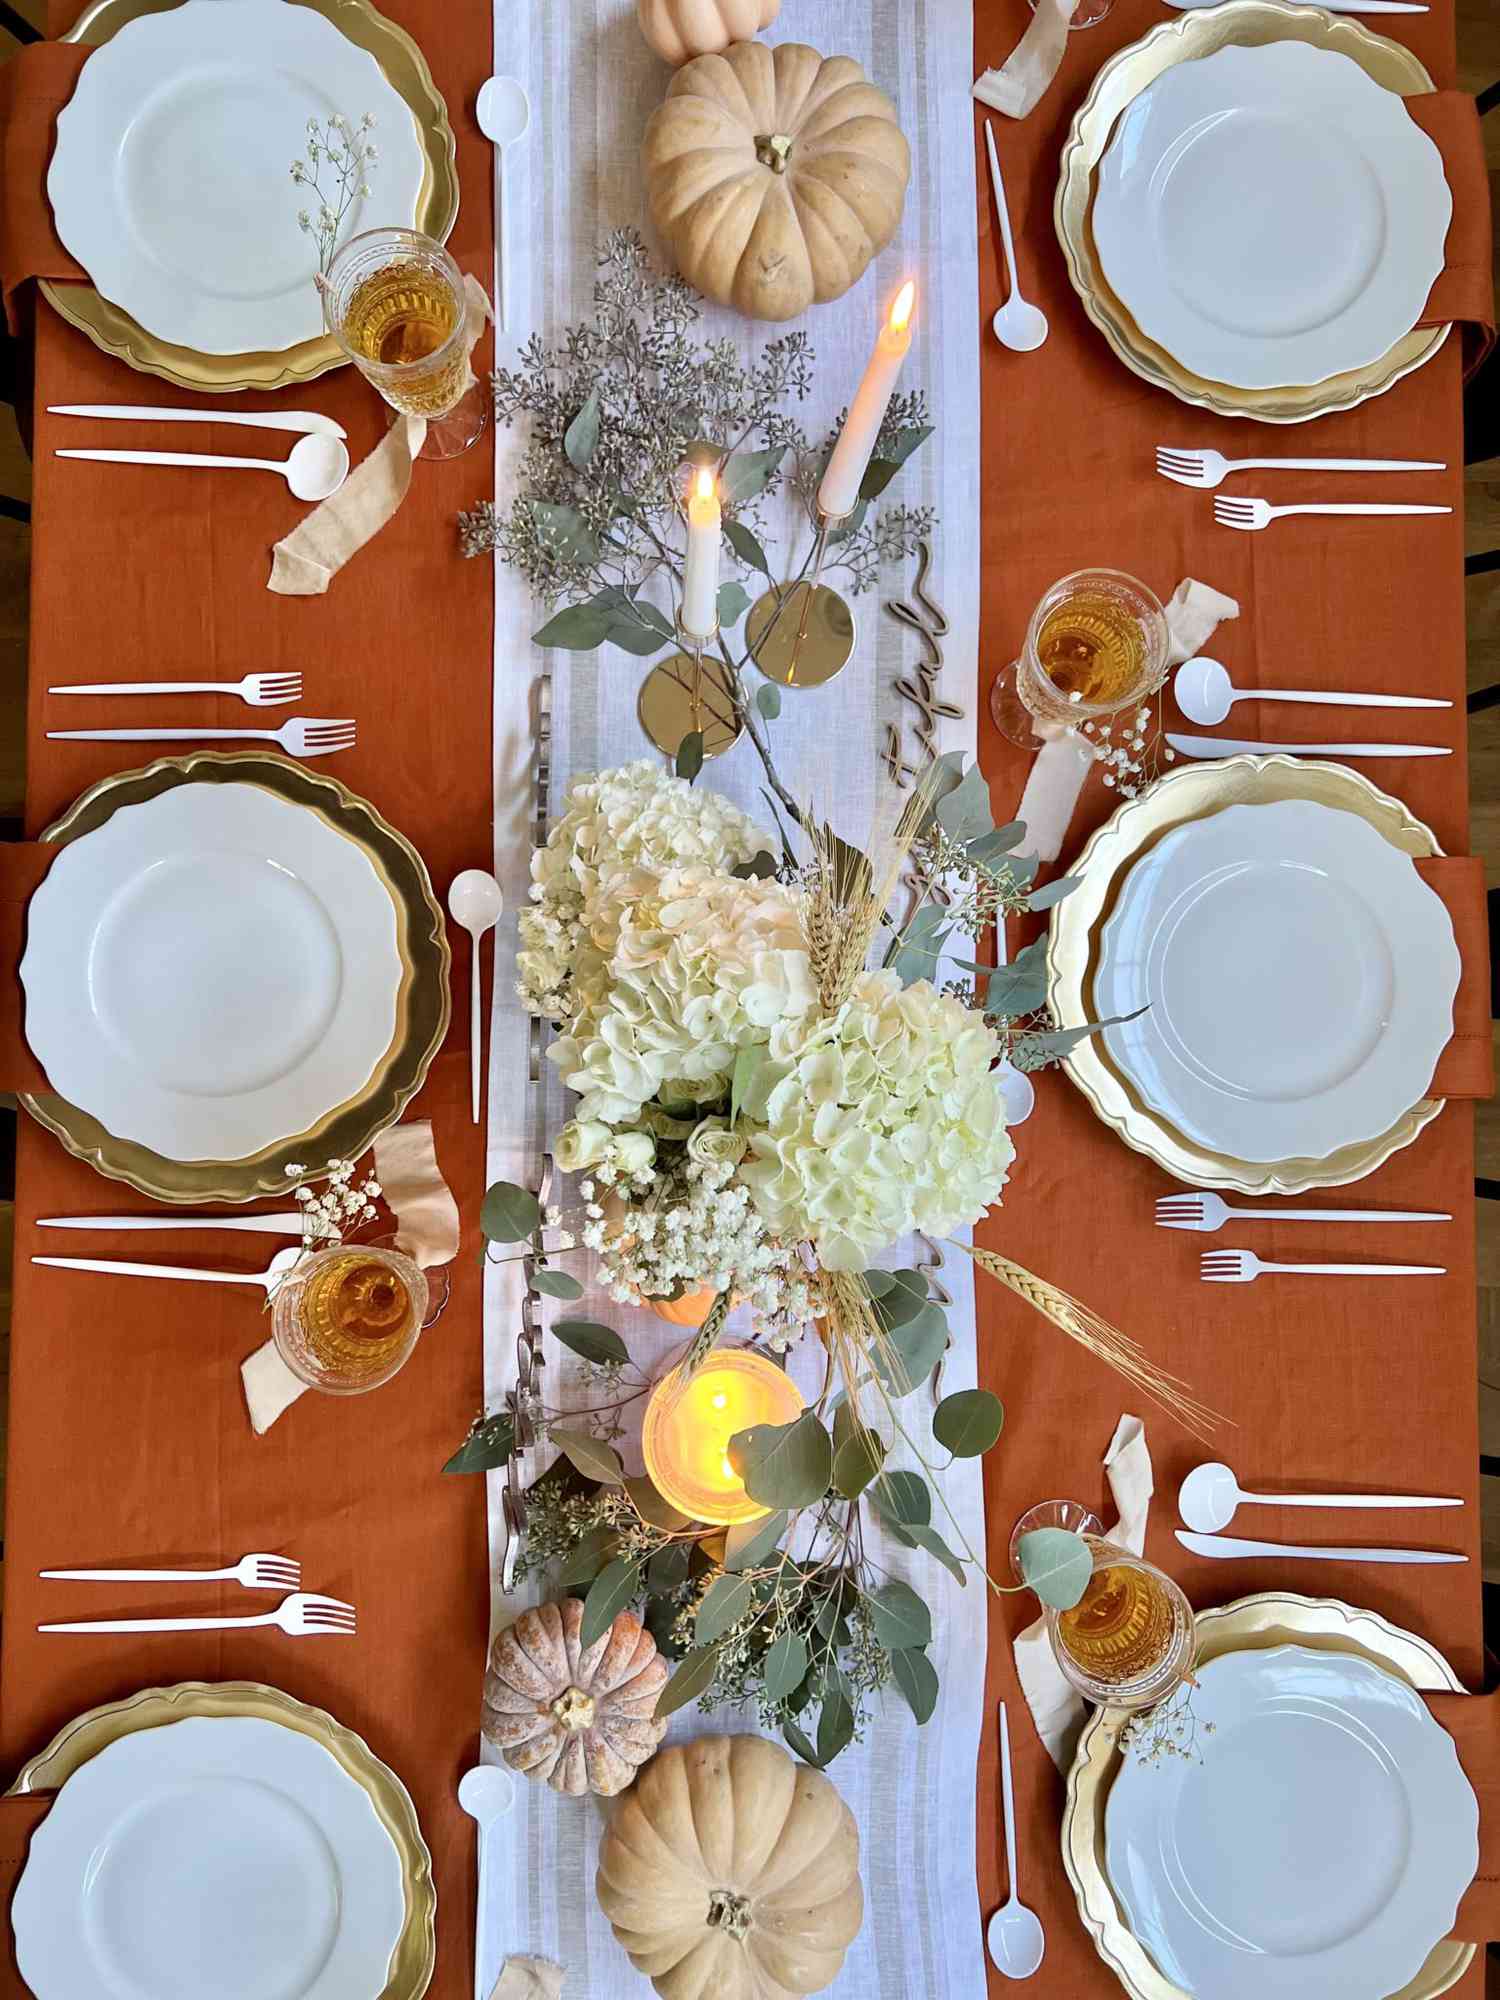 Vista geral de uma mesa de jantar com tema de Ação de Graças, com centros de mesa e arranjos decorativos